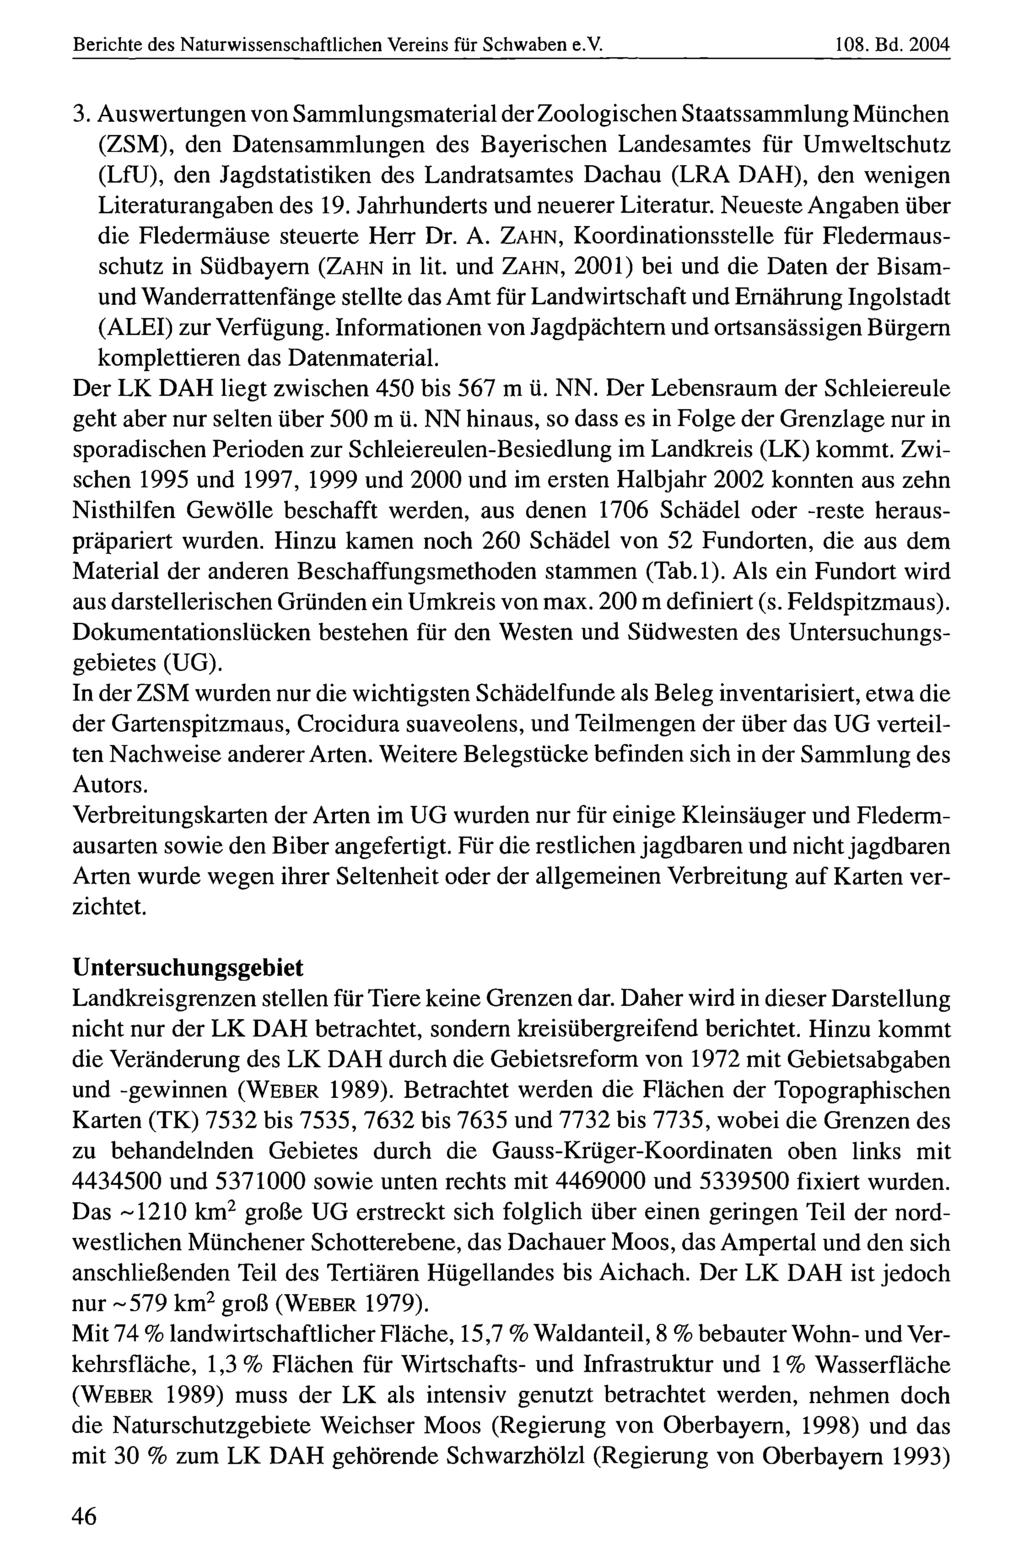 Berichte des Naturwissenschaftlichen Naturwissenschaftlicher Vereins für für Schwaben, download e.v. unter www.biologiezentrum.at 108. Bd. 2004 3.